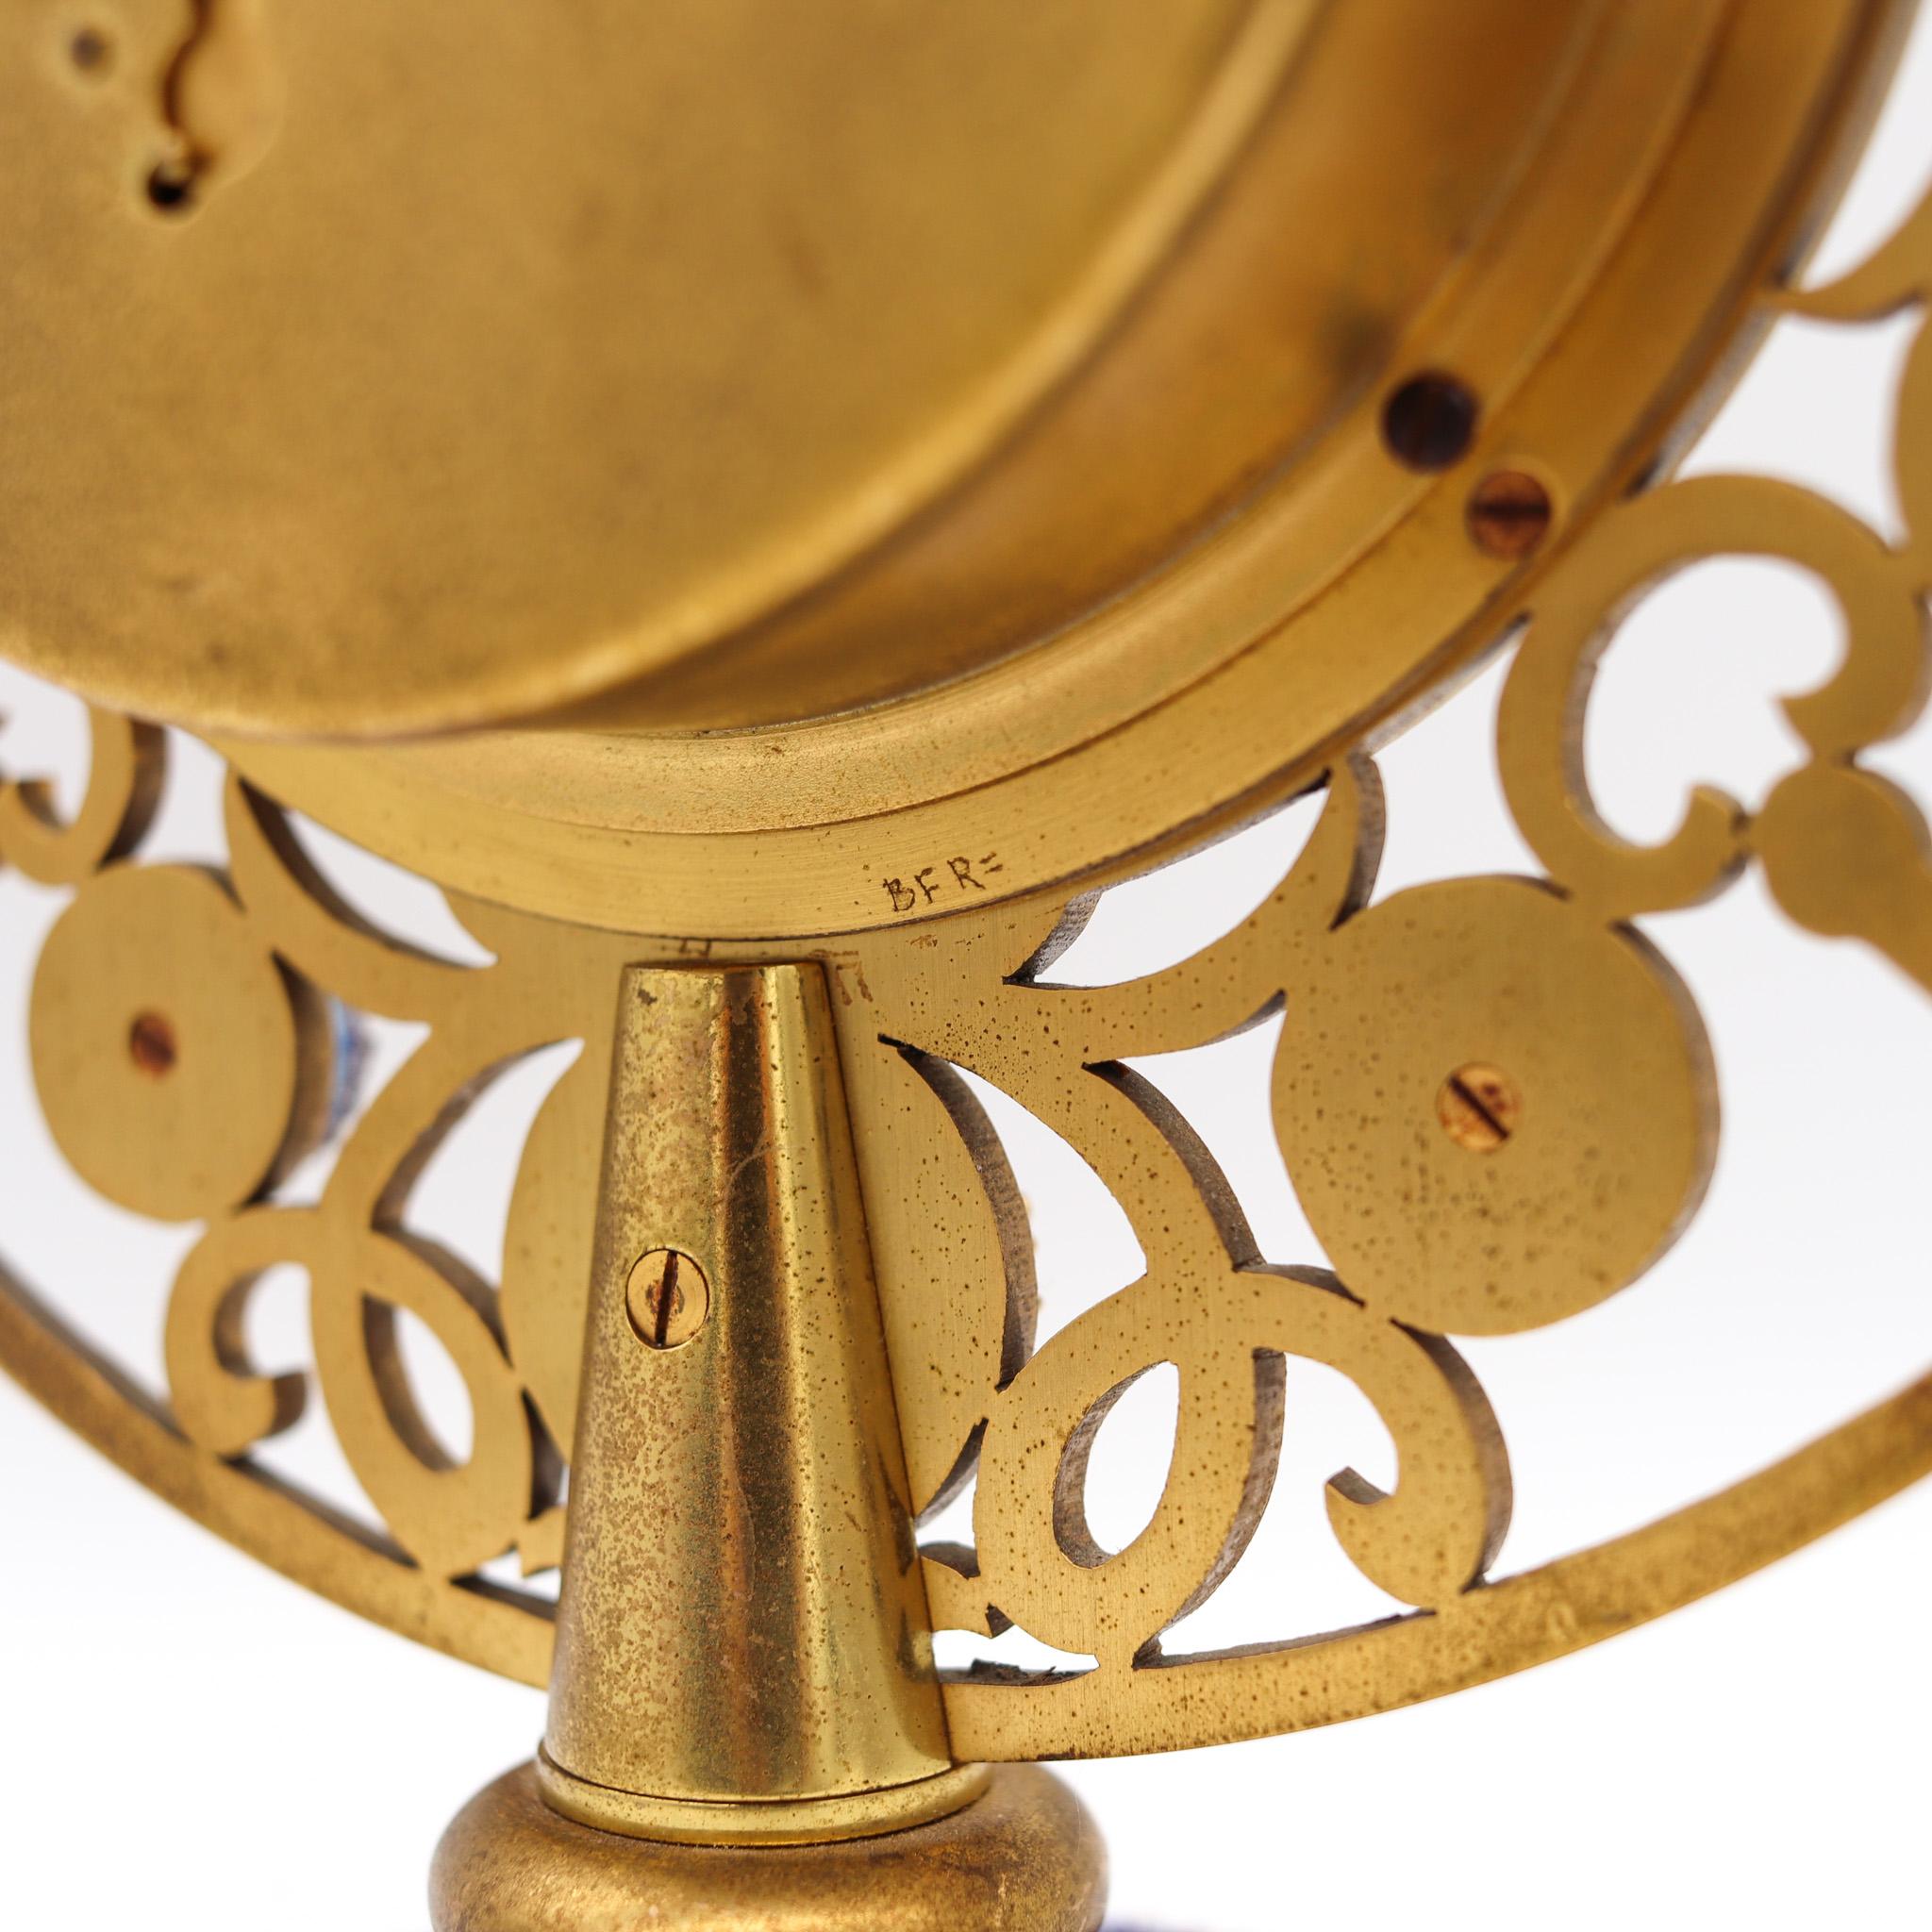 Art Glass Gubelin Swiss 1960 Retro Modernist 8 Days Desk Clock in Gilded Bronze and Enamel For Sale